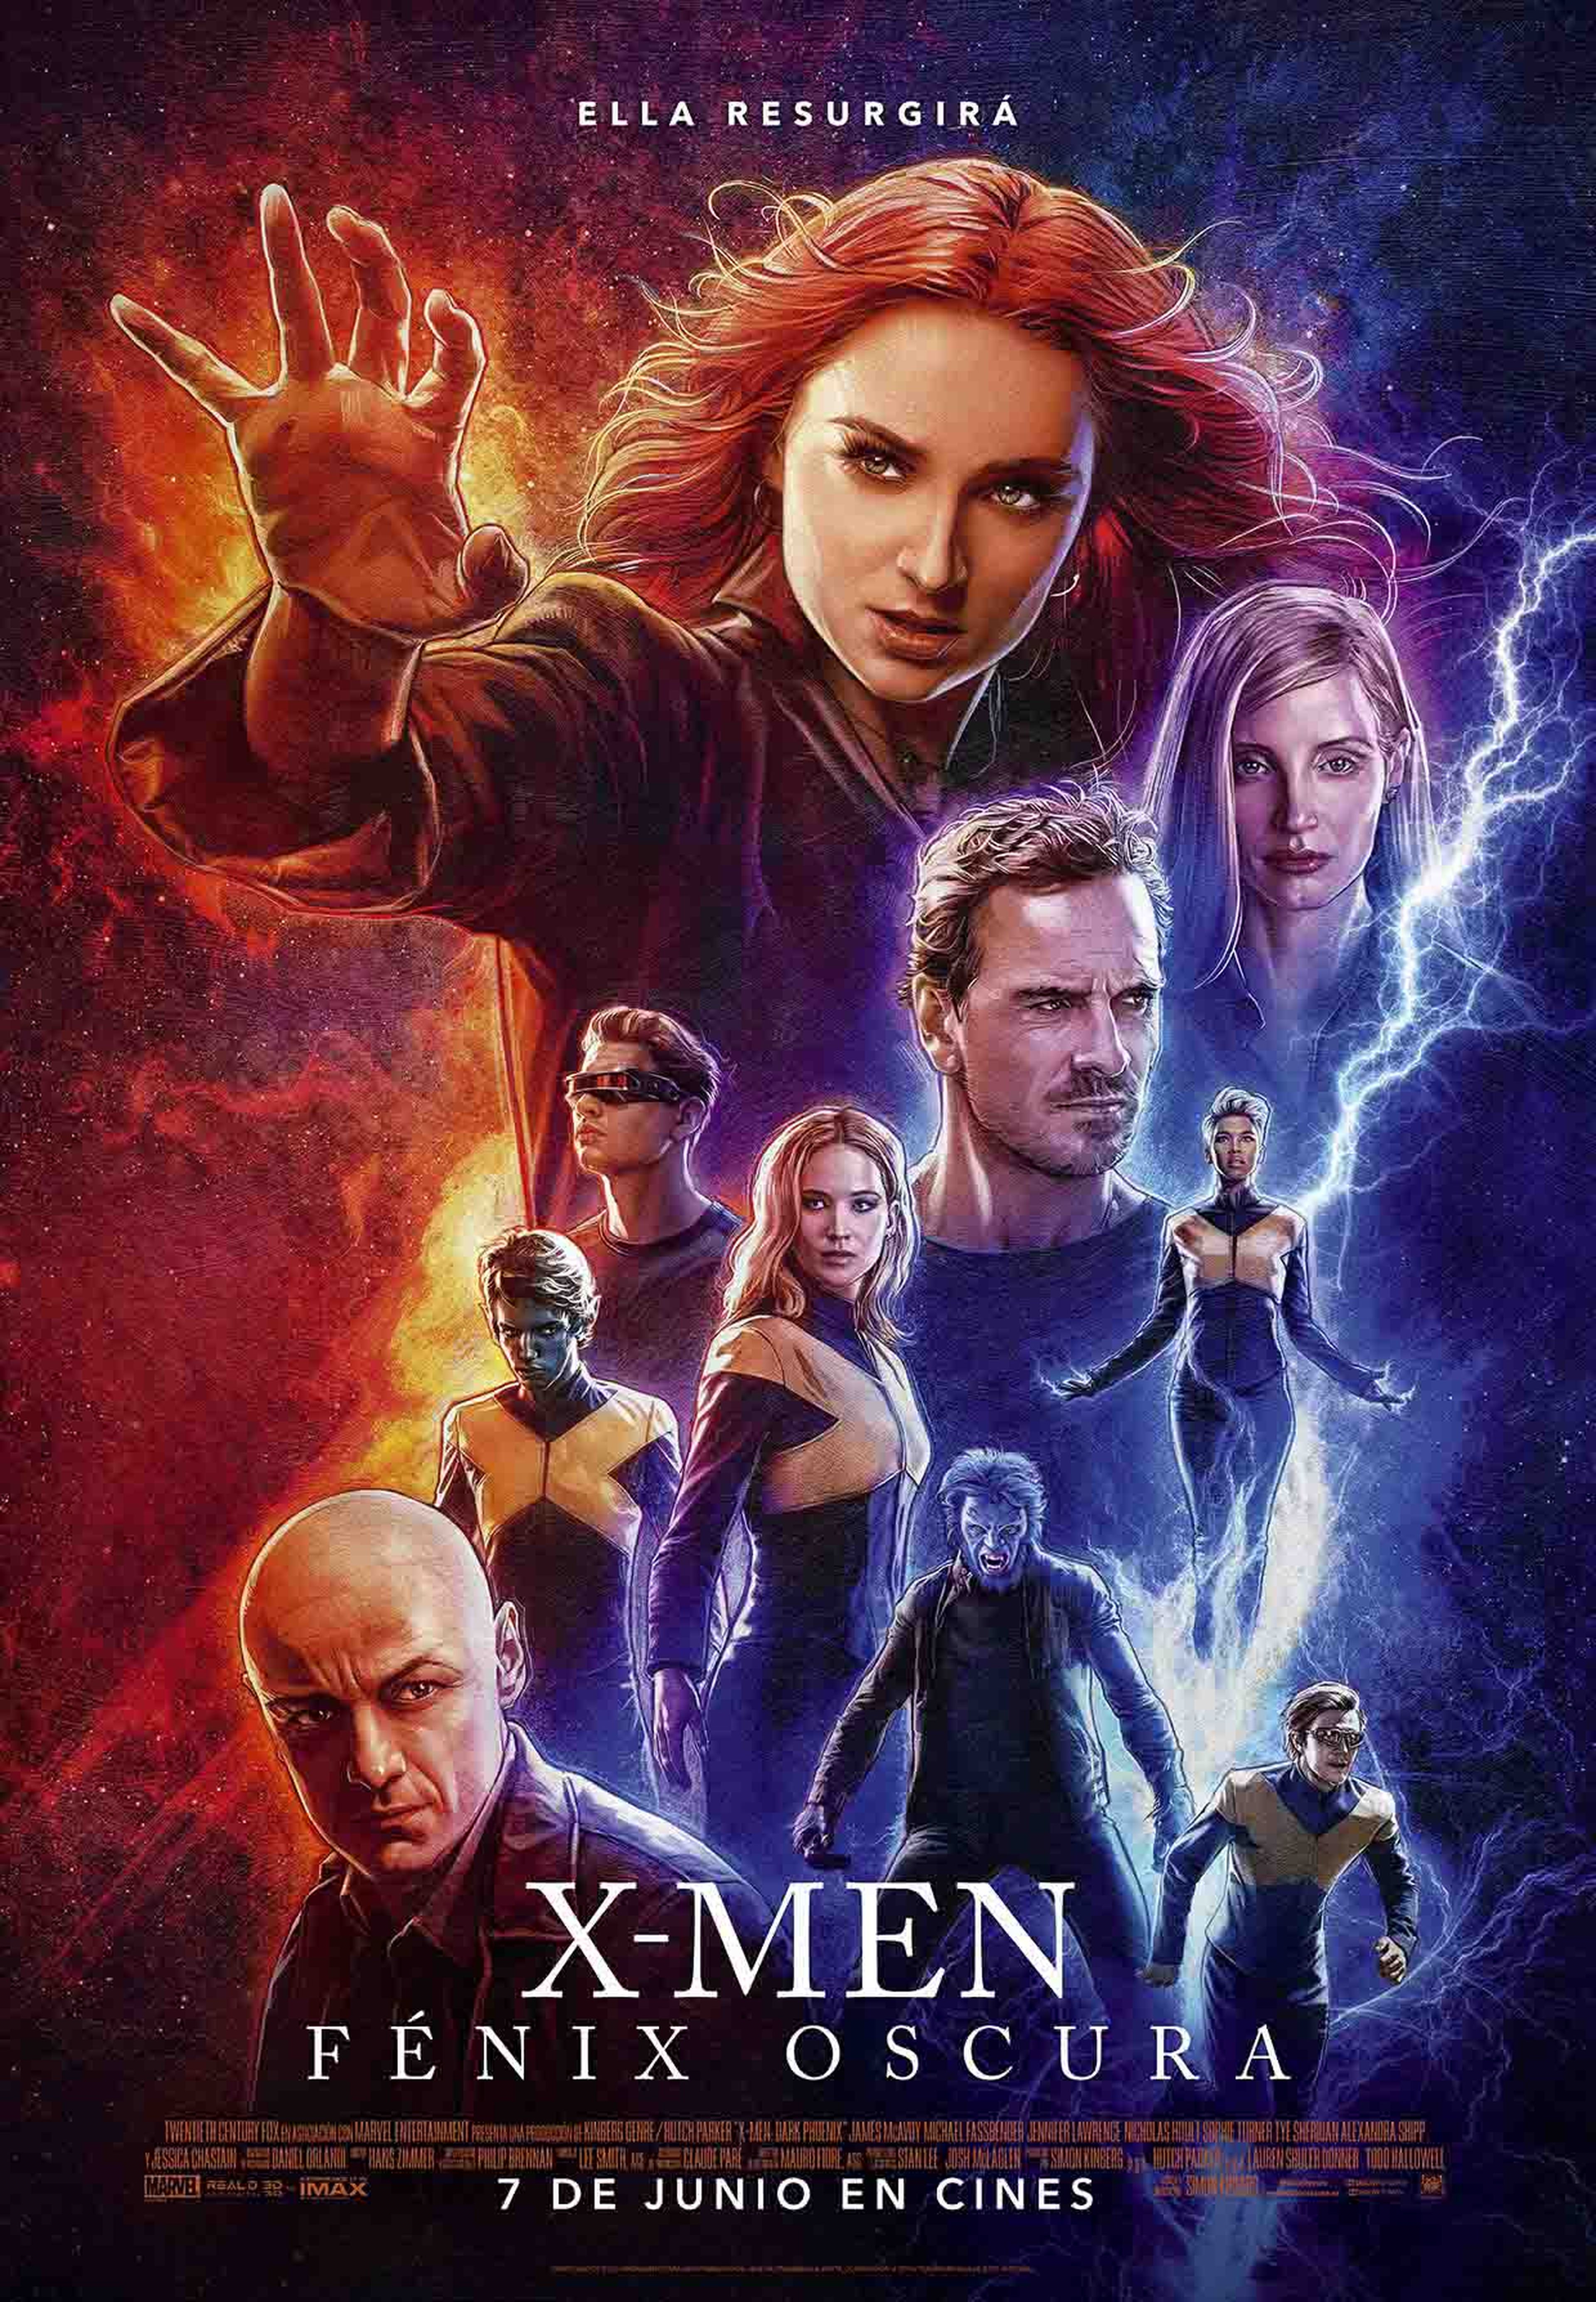 X-Men Fenix Oscura poster